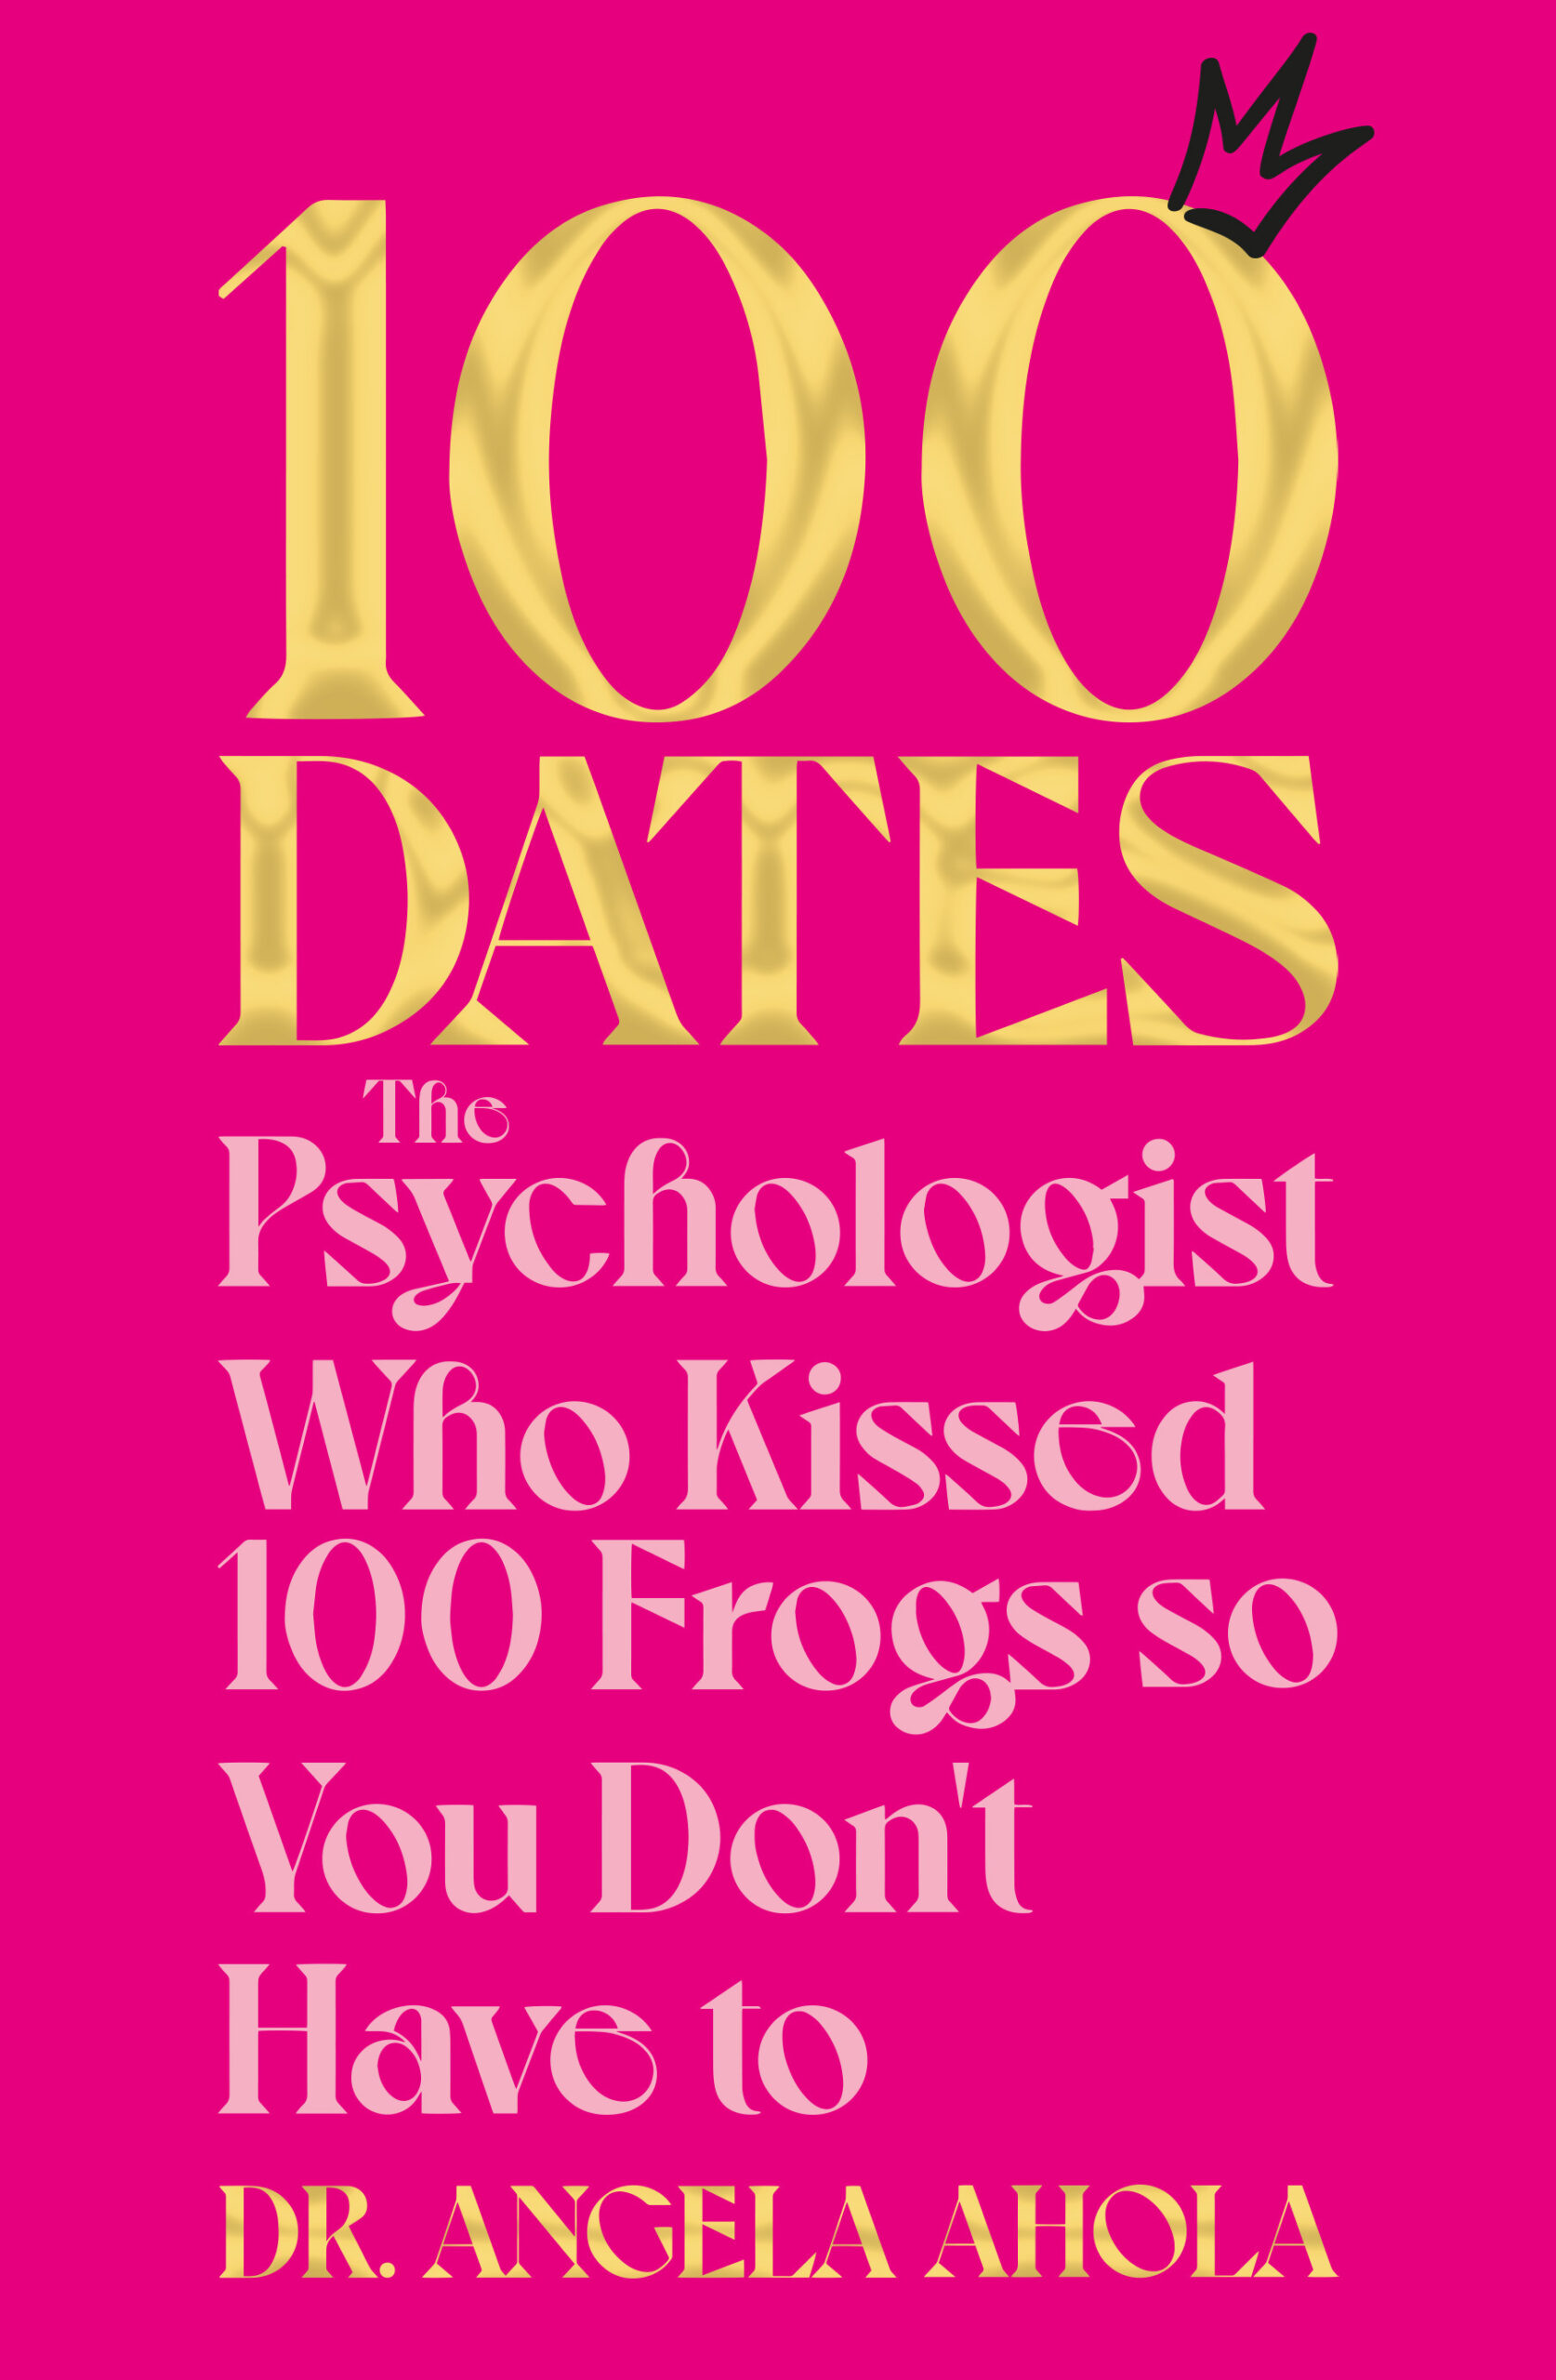 100 dates UK